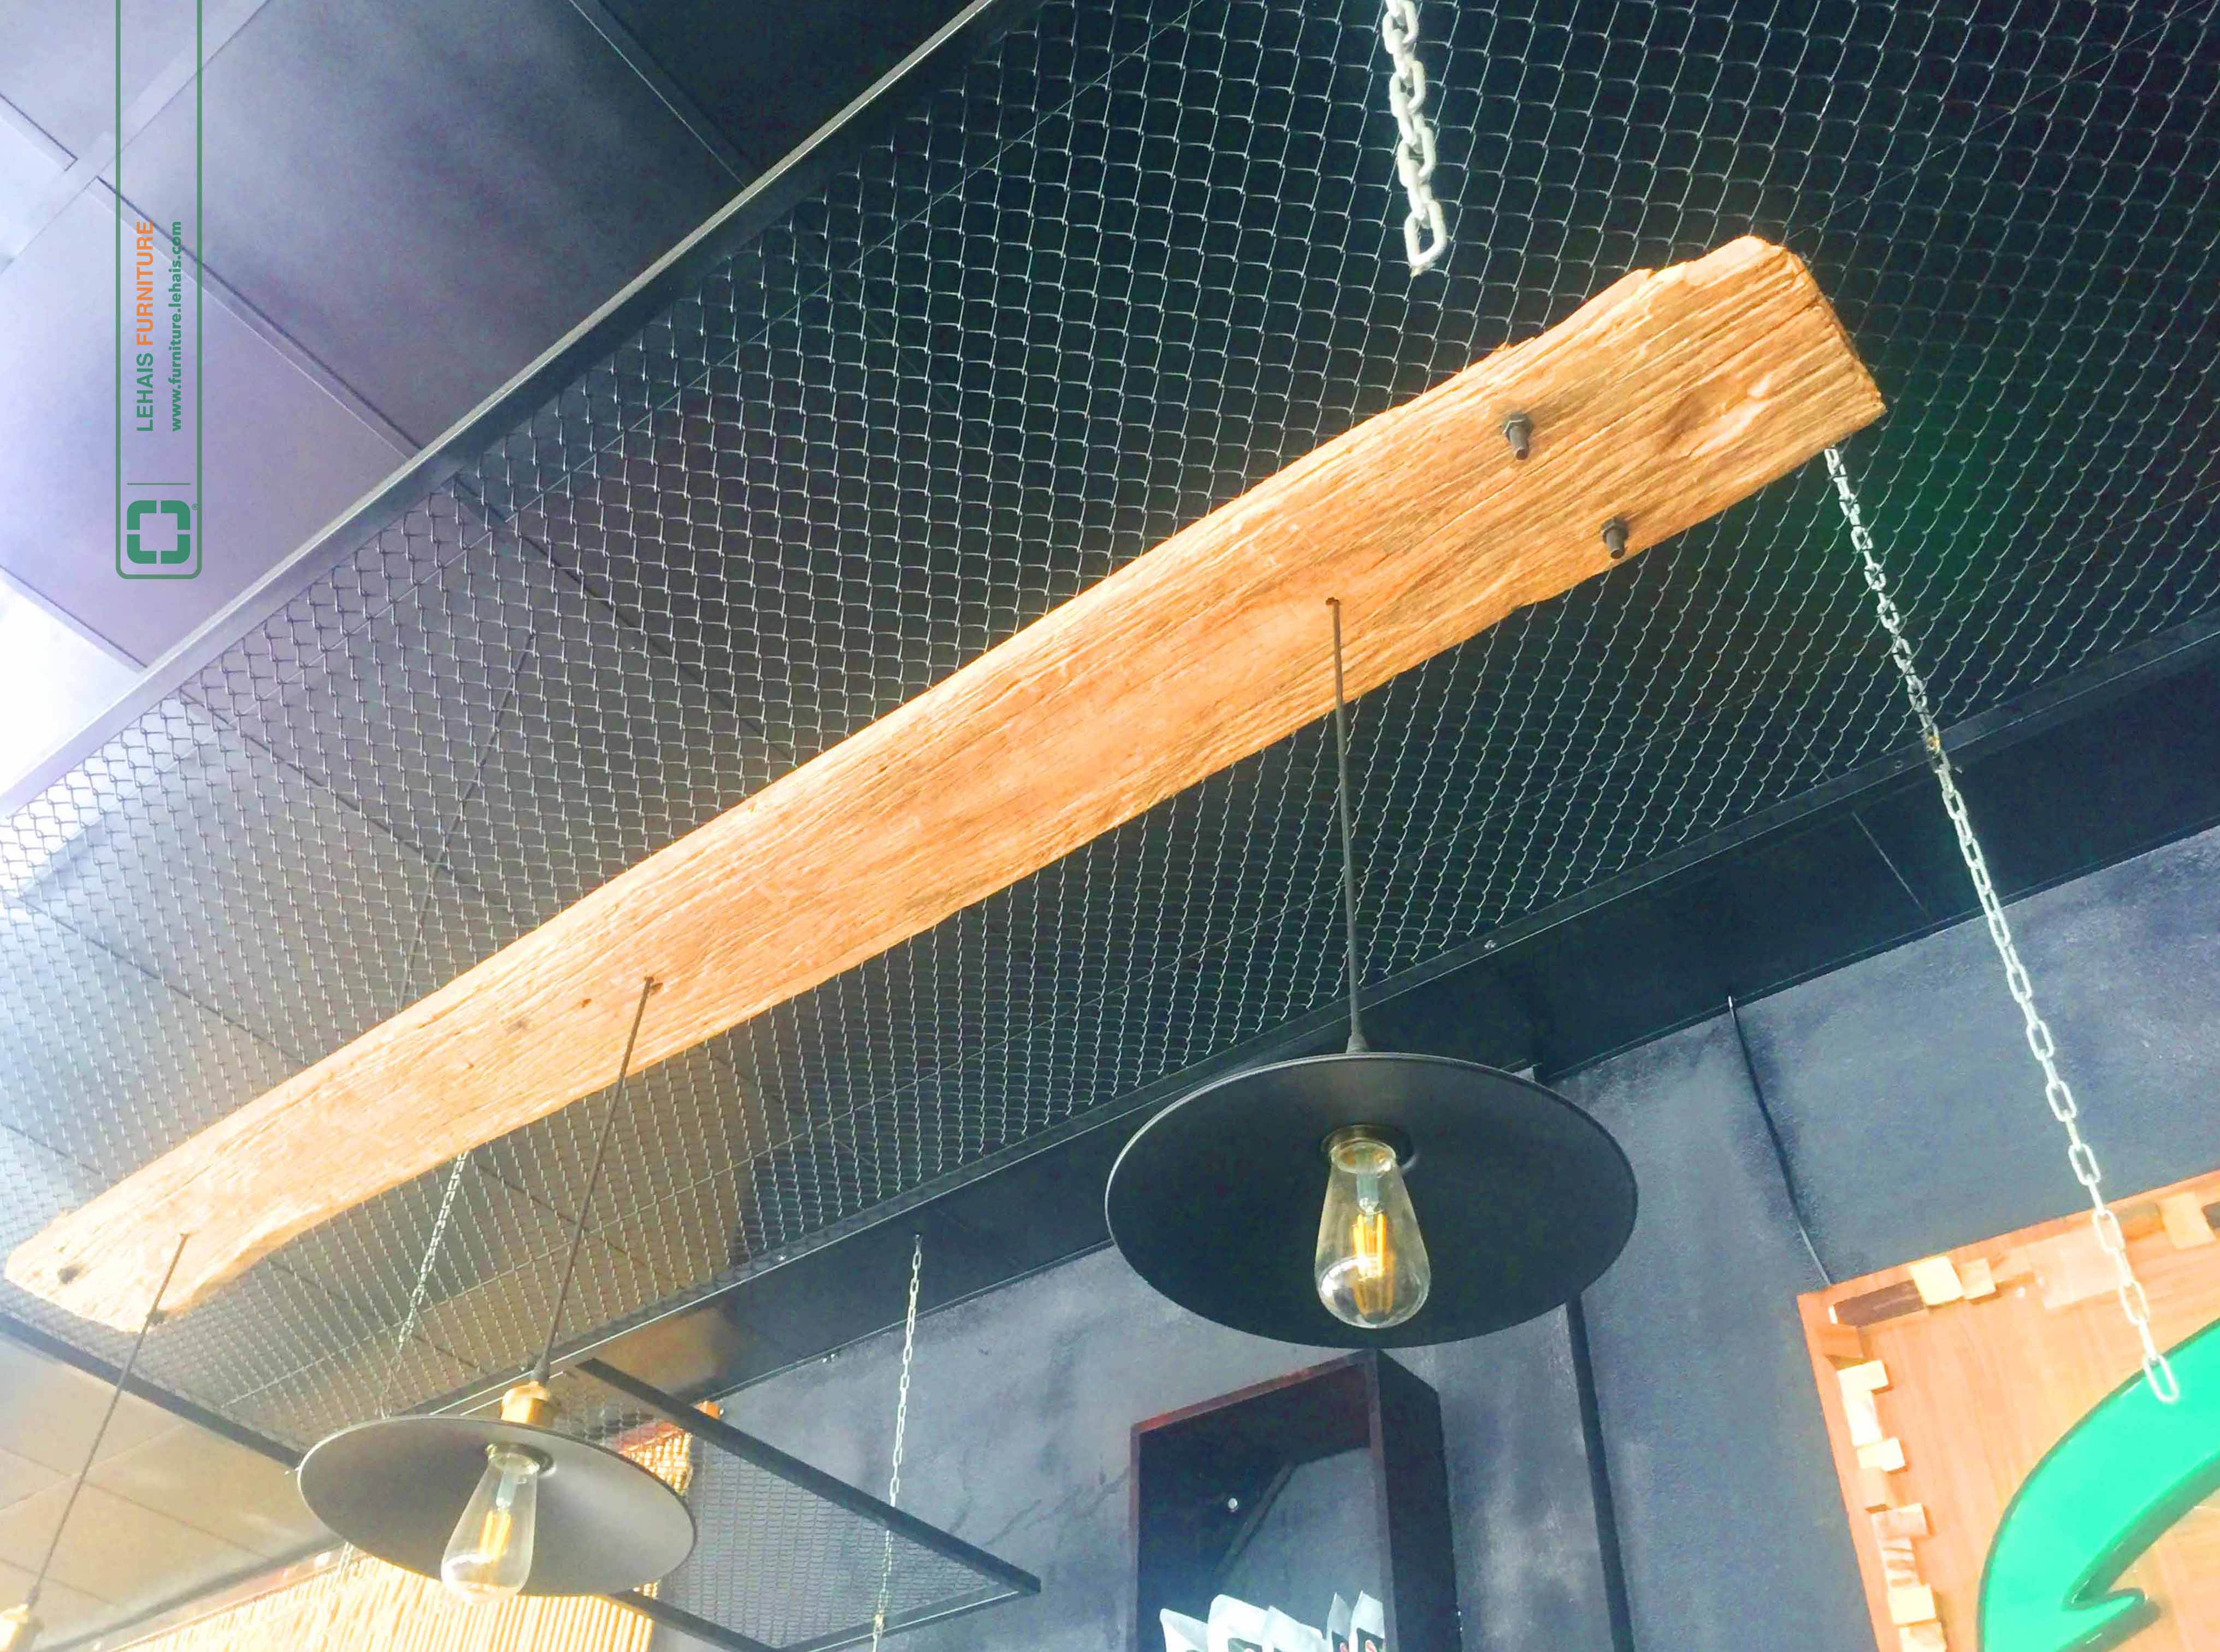 Đèn trang trí được kết hợp gỗ mộc và ốc sắt treo tại Xanh Coffee, Như Xuân, Thanh Hóa - D7LHFU